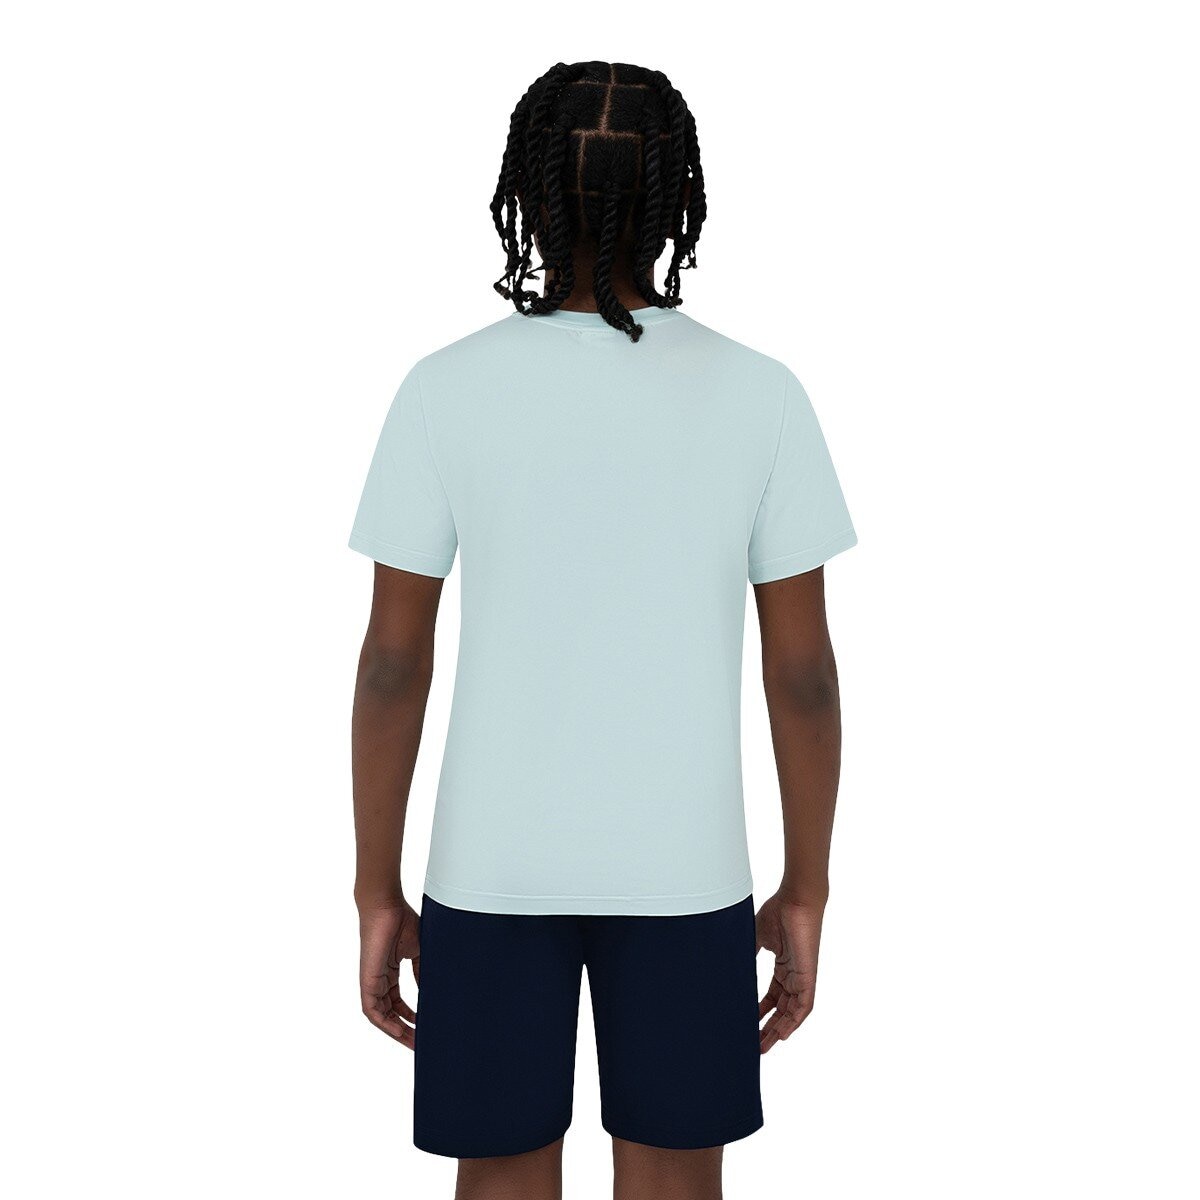 Fila 兒童短袖運動服飾三件組 藍色組